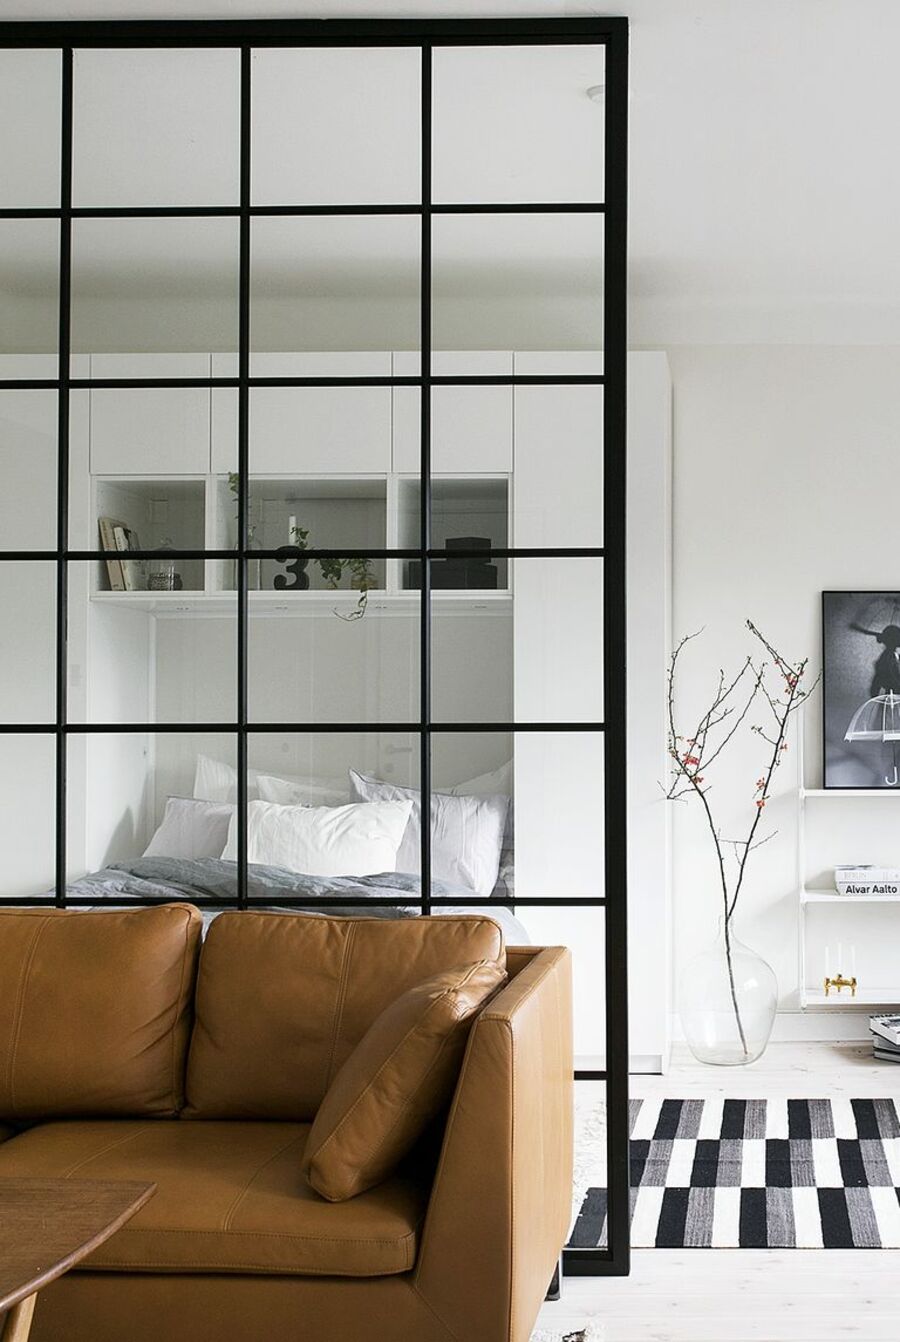 Dormitorio separado de un living o sala de estar por un separador de vidrio con cuadrados de marco negro. 